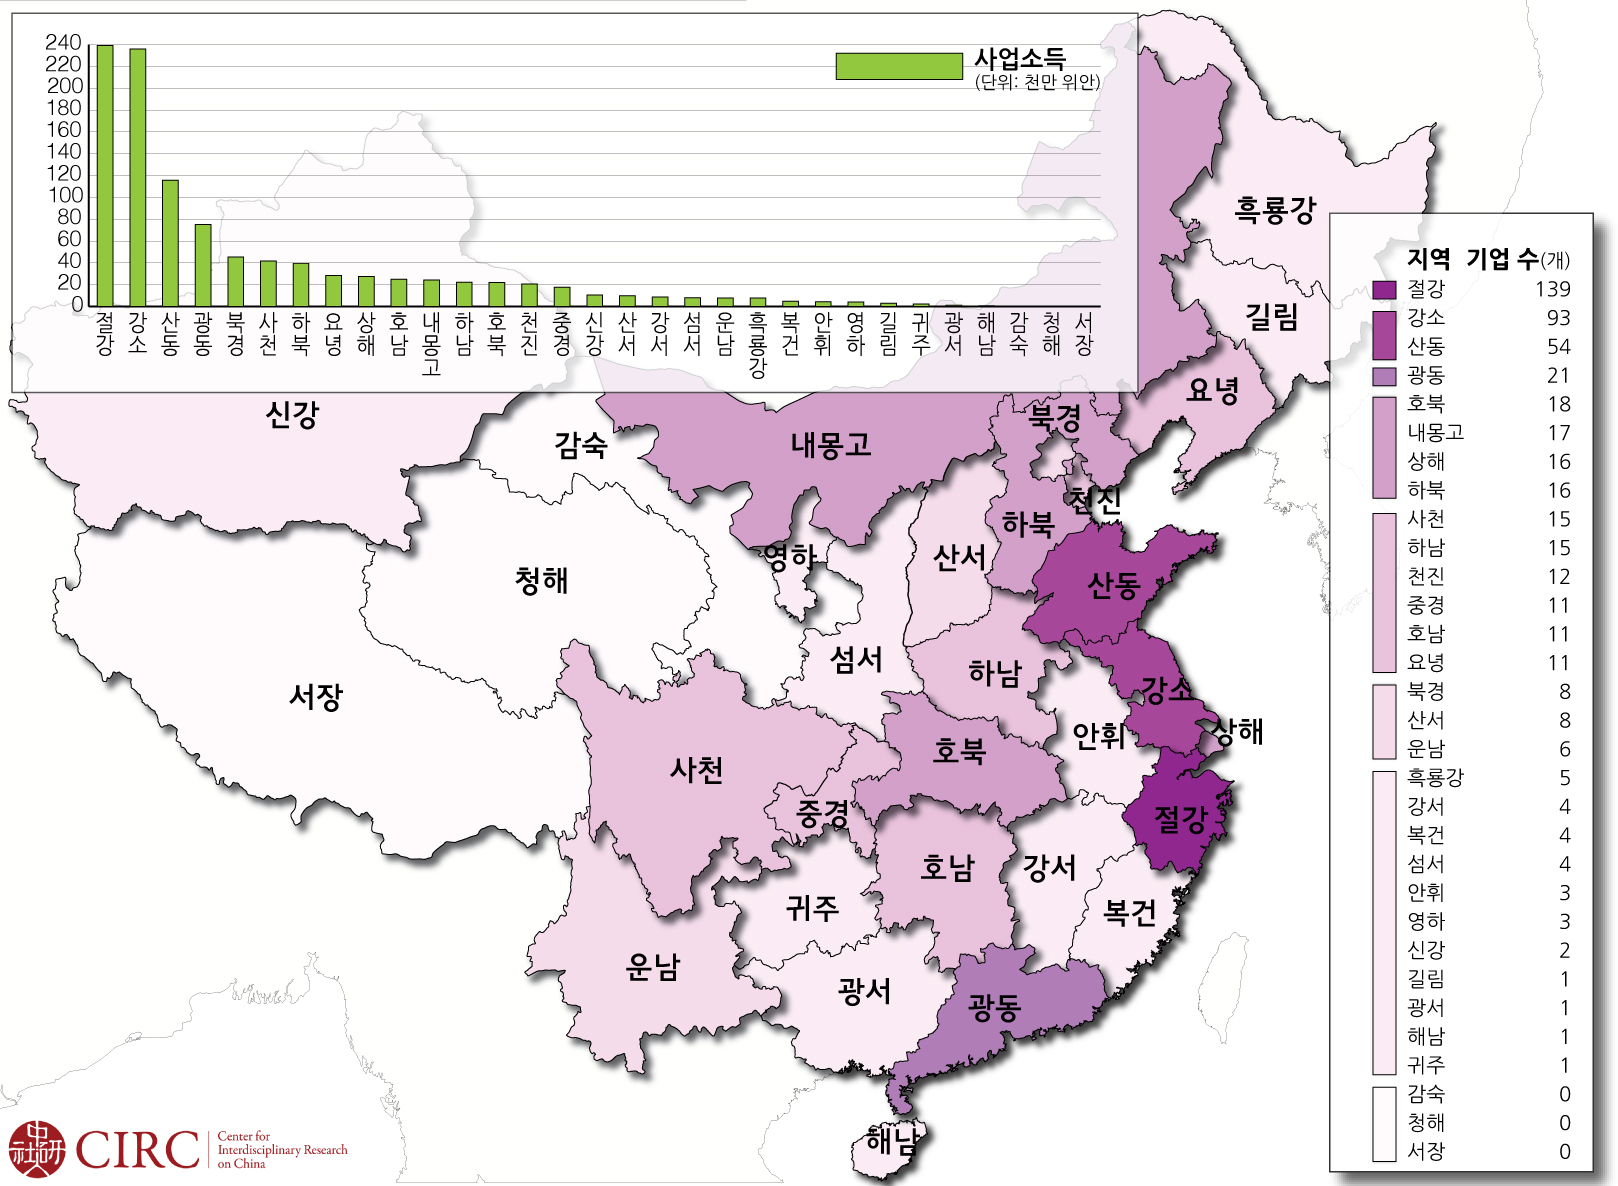 2013년 500대 민영기업 지역별 분포와 네트워크.jpg